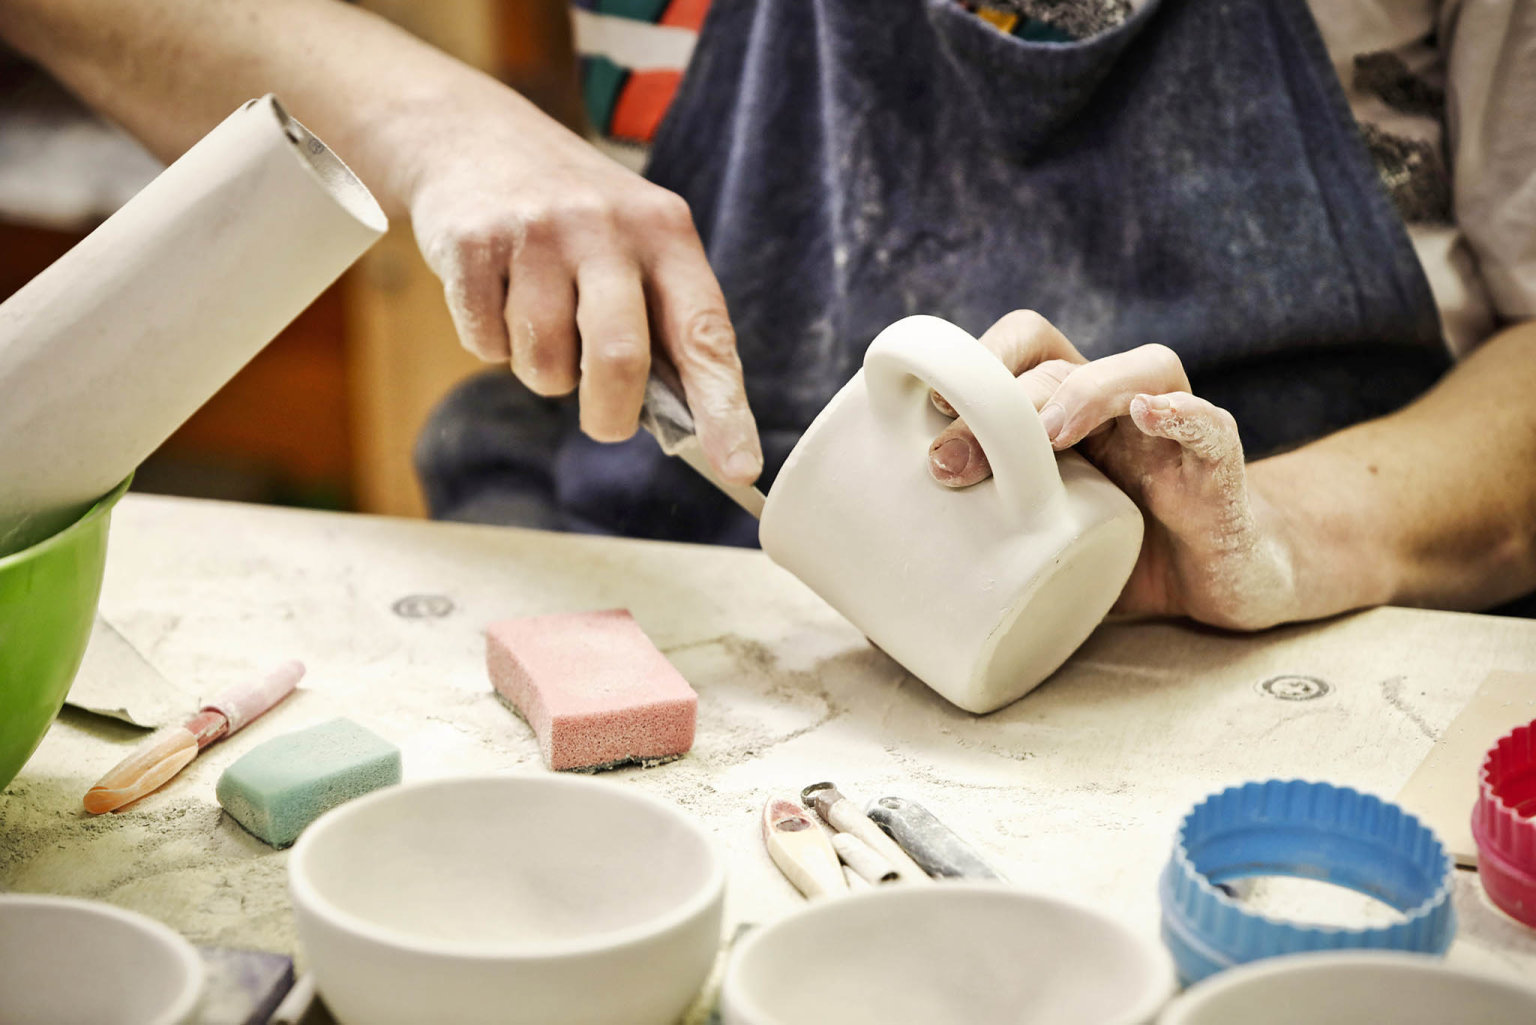 V keramické dílnì vznikají užitkové dárkové pøedmìty, jako jsou džbánky, misky, kvìtináèe nebo formy na bábovky.